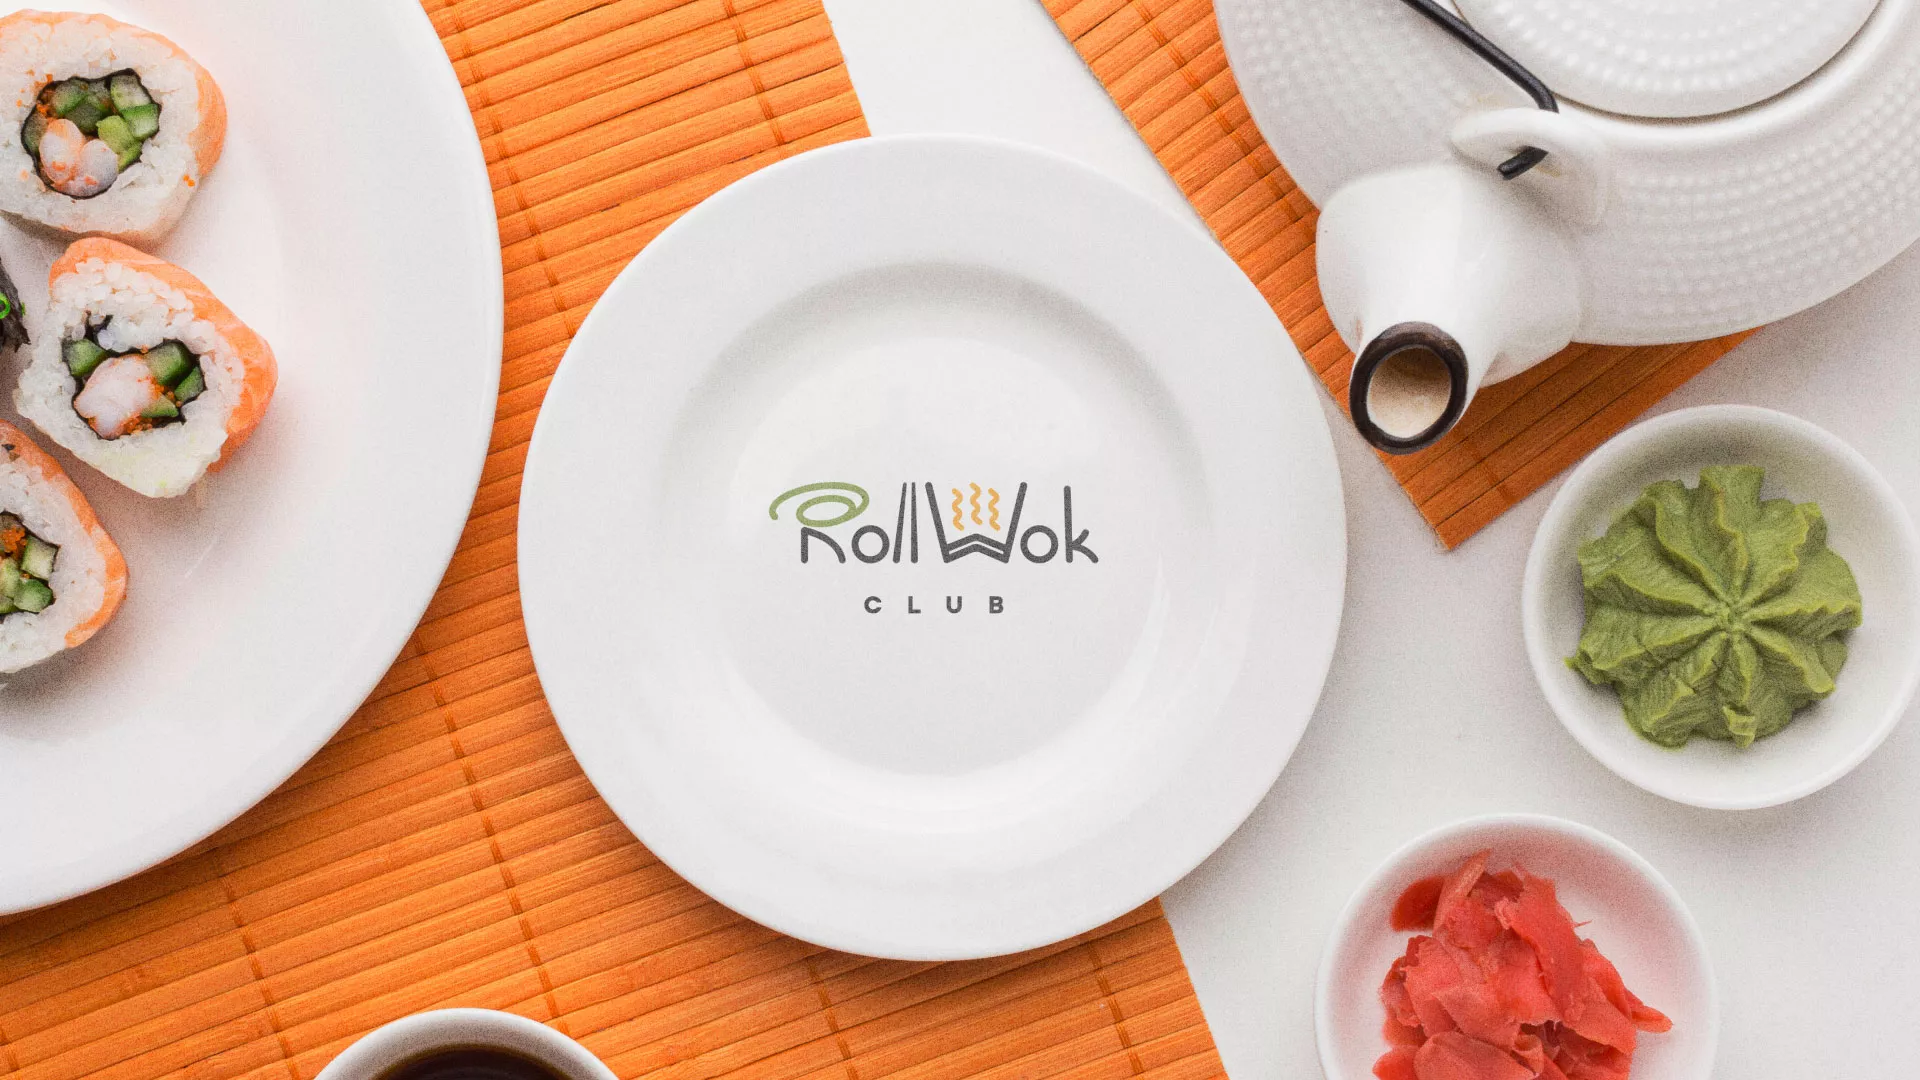 Разработка логотипа и фирменного стиля суши-бара «Roll Wok Club» в Болгаре